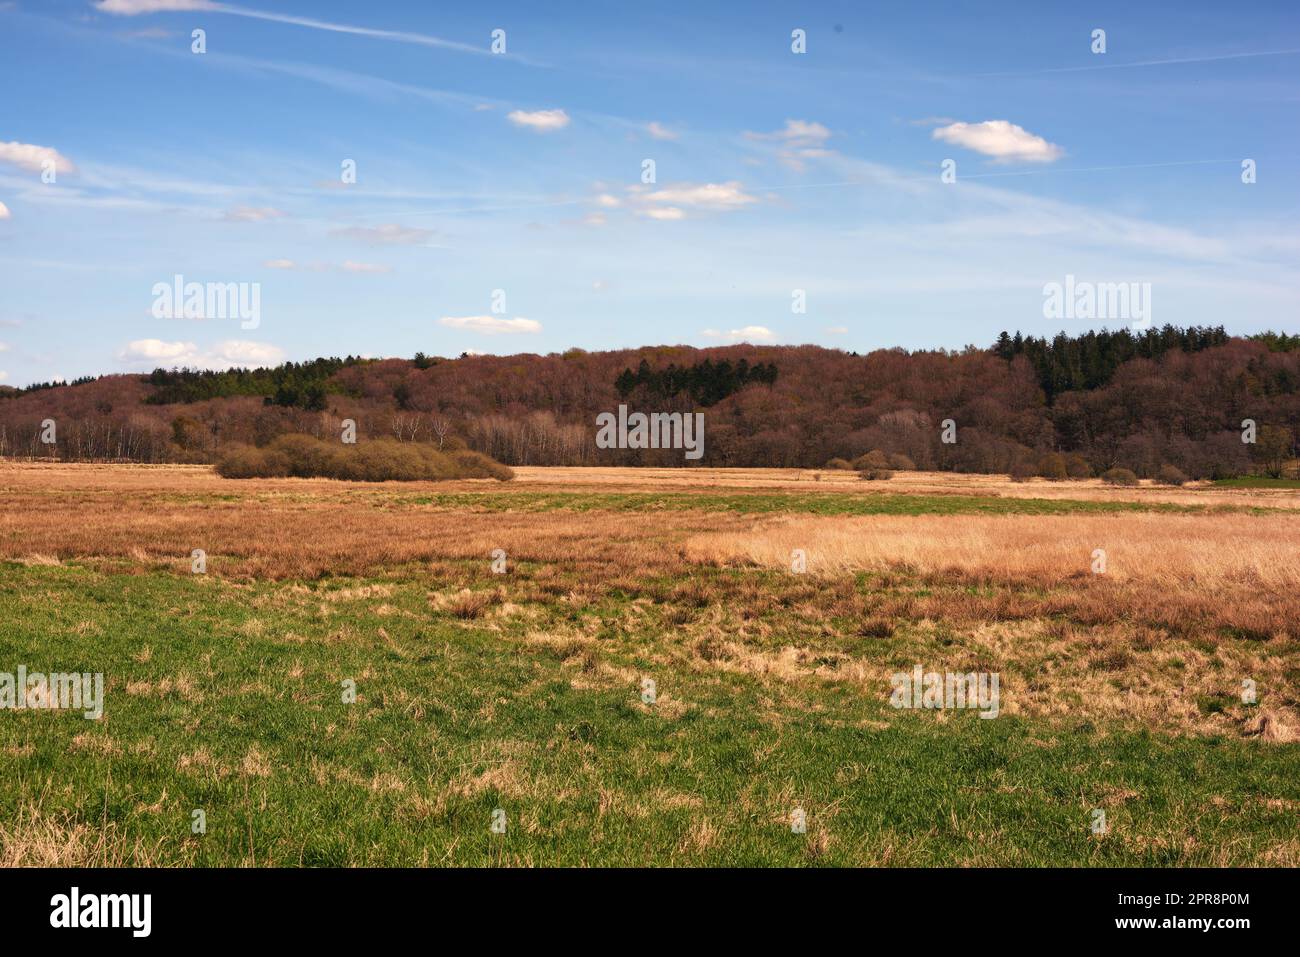 Vista panoramica del paesaggio rurale nel Regno di Danimarca contro il cielo blu, il copyspace e l'aria fresca. Tranquilla armonia nella natura con cespugli e alberi che crescono selvaggi in un bosco naturale e tranquillo all'aperto Foto Stock